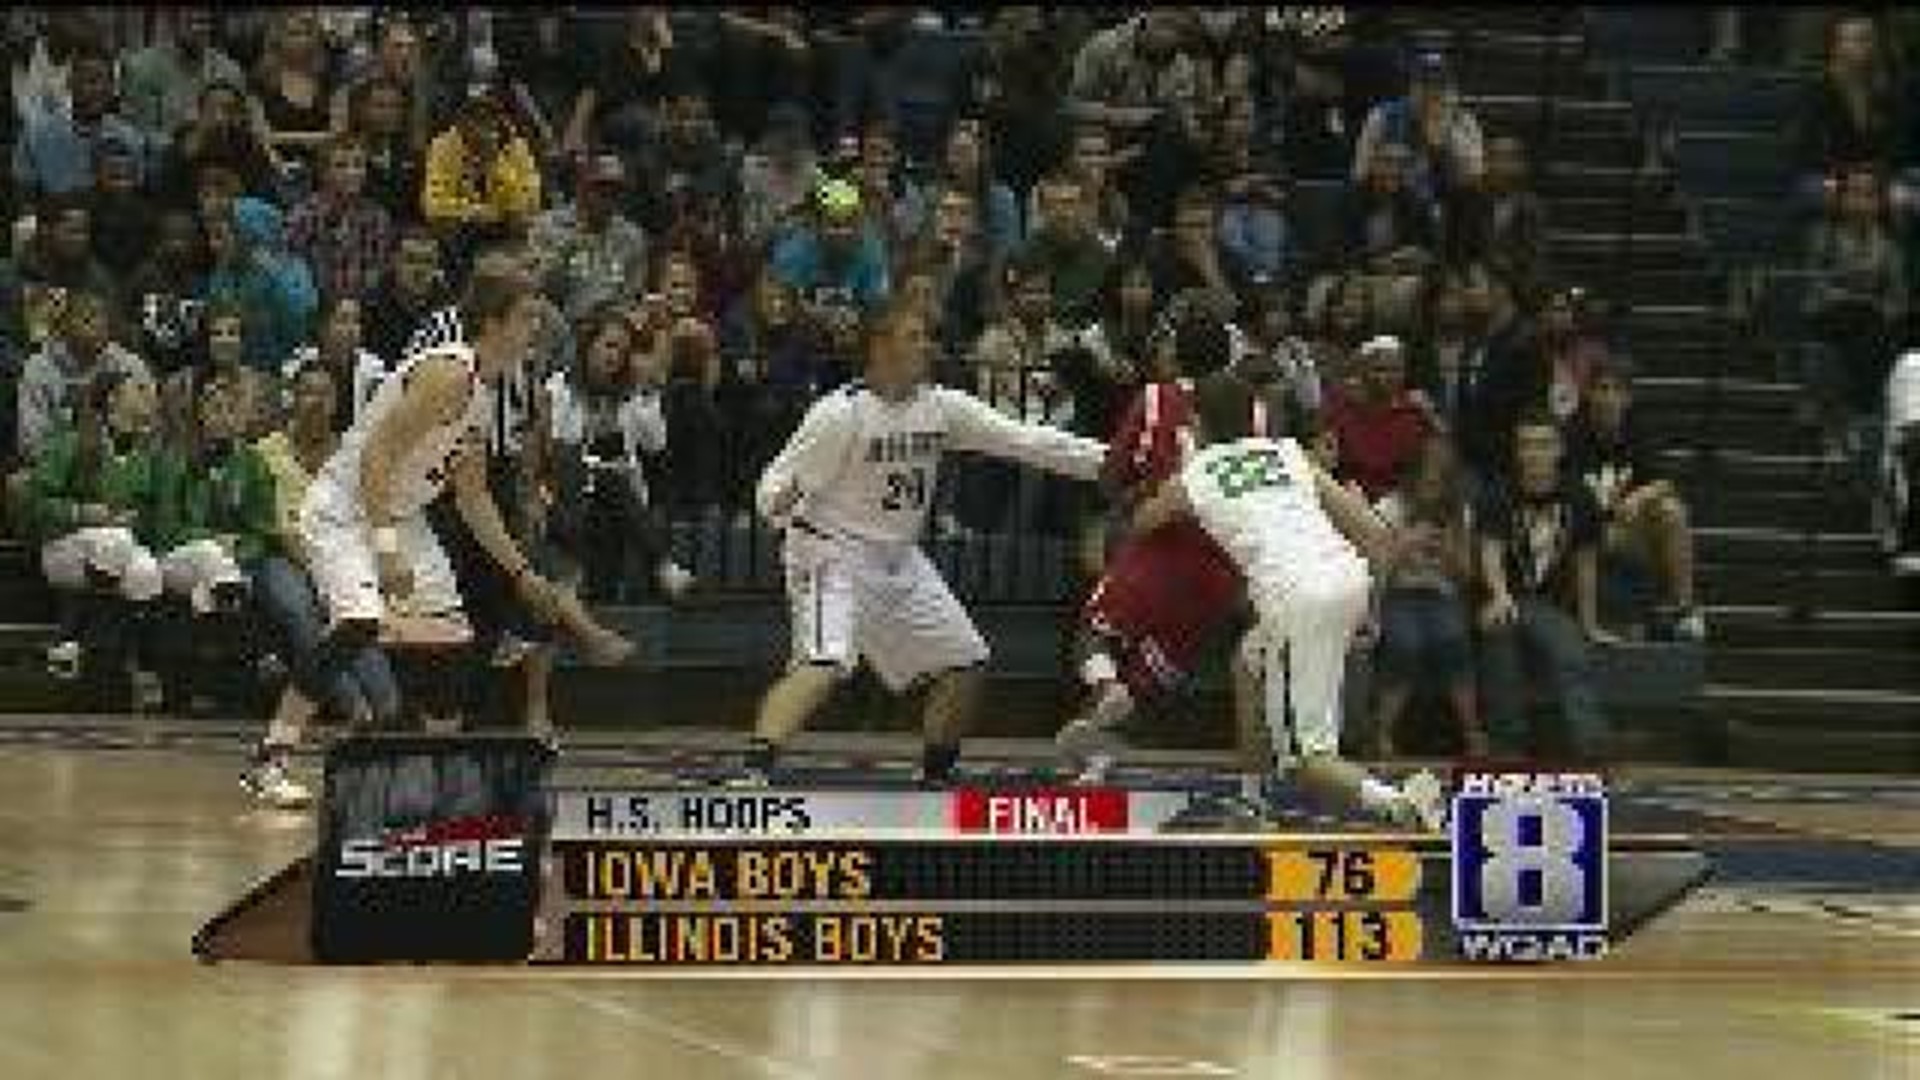 Illinois boys take All-star game